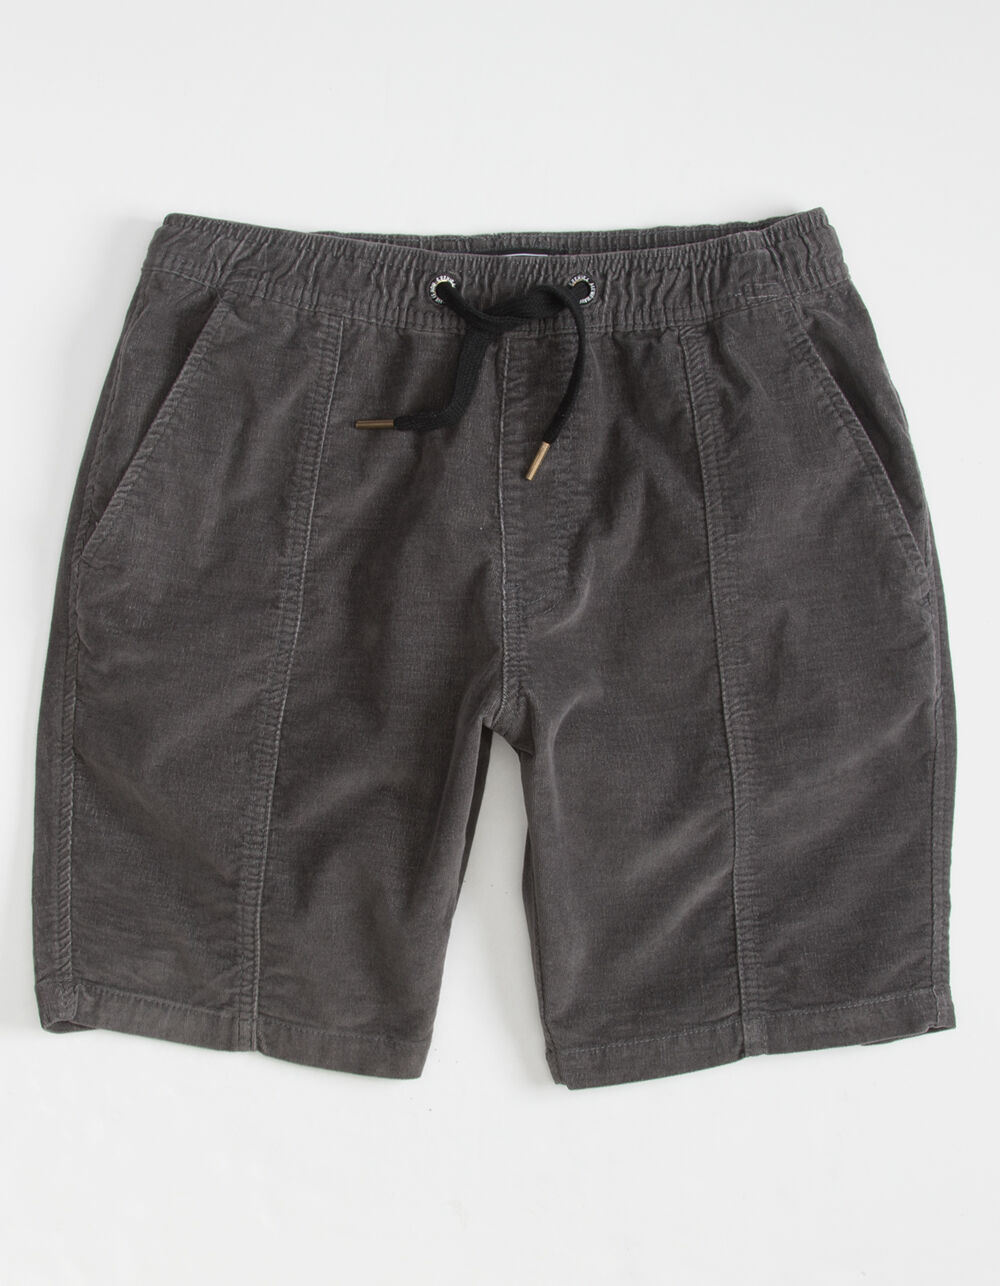 EZEKIEL Johnson Mens Dark Gray Shorts - DARK GRAY | Tillys